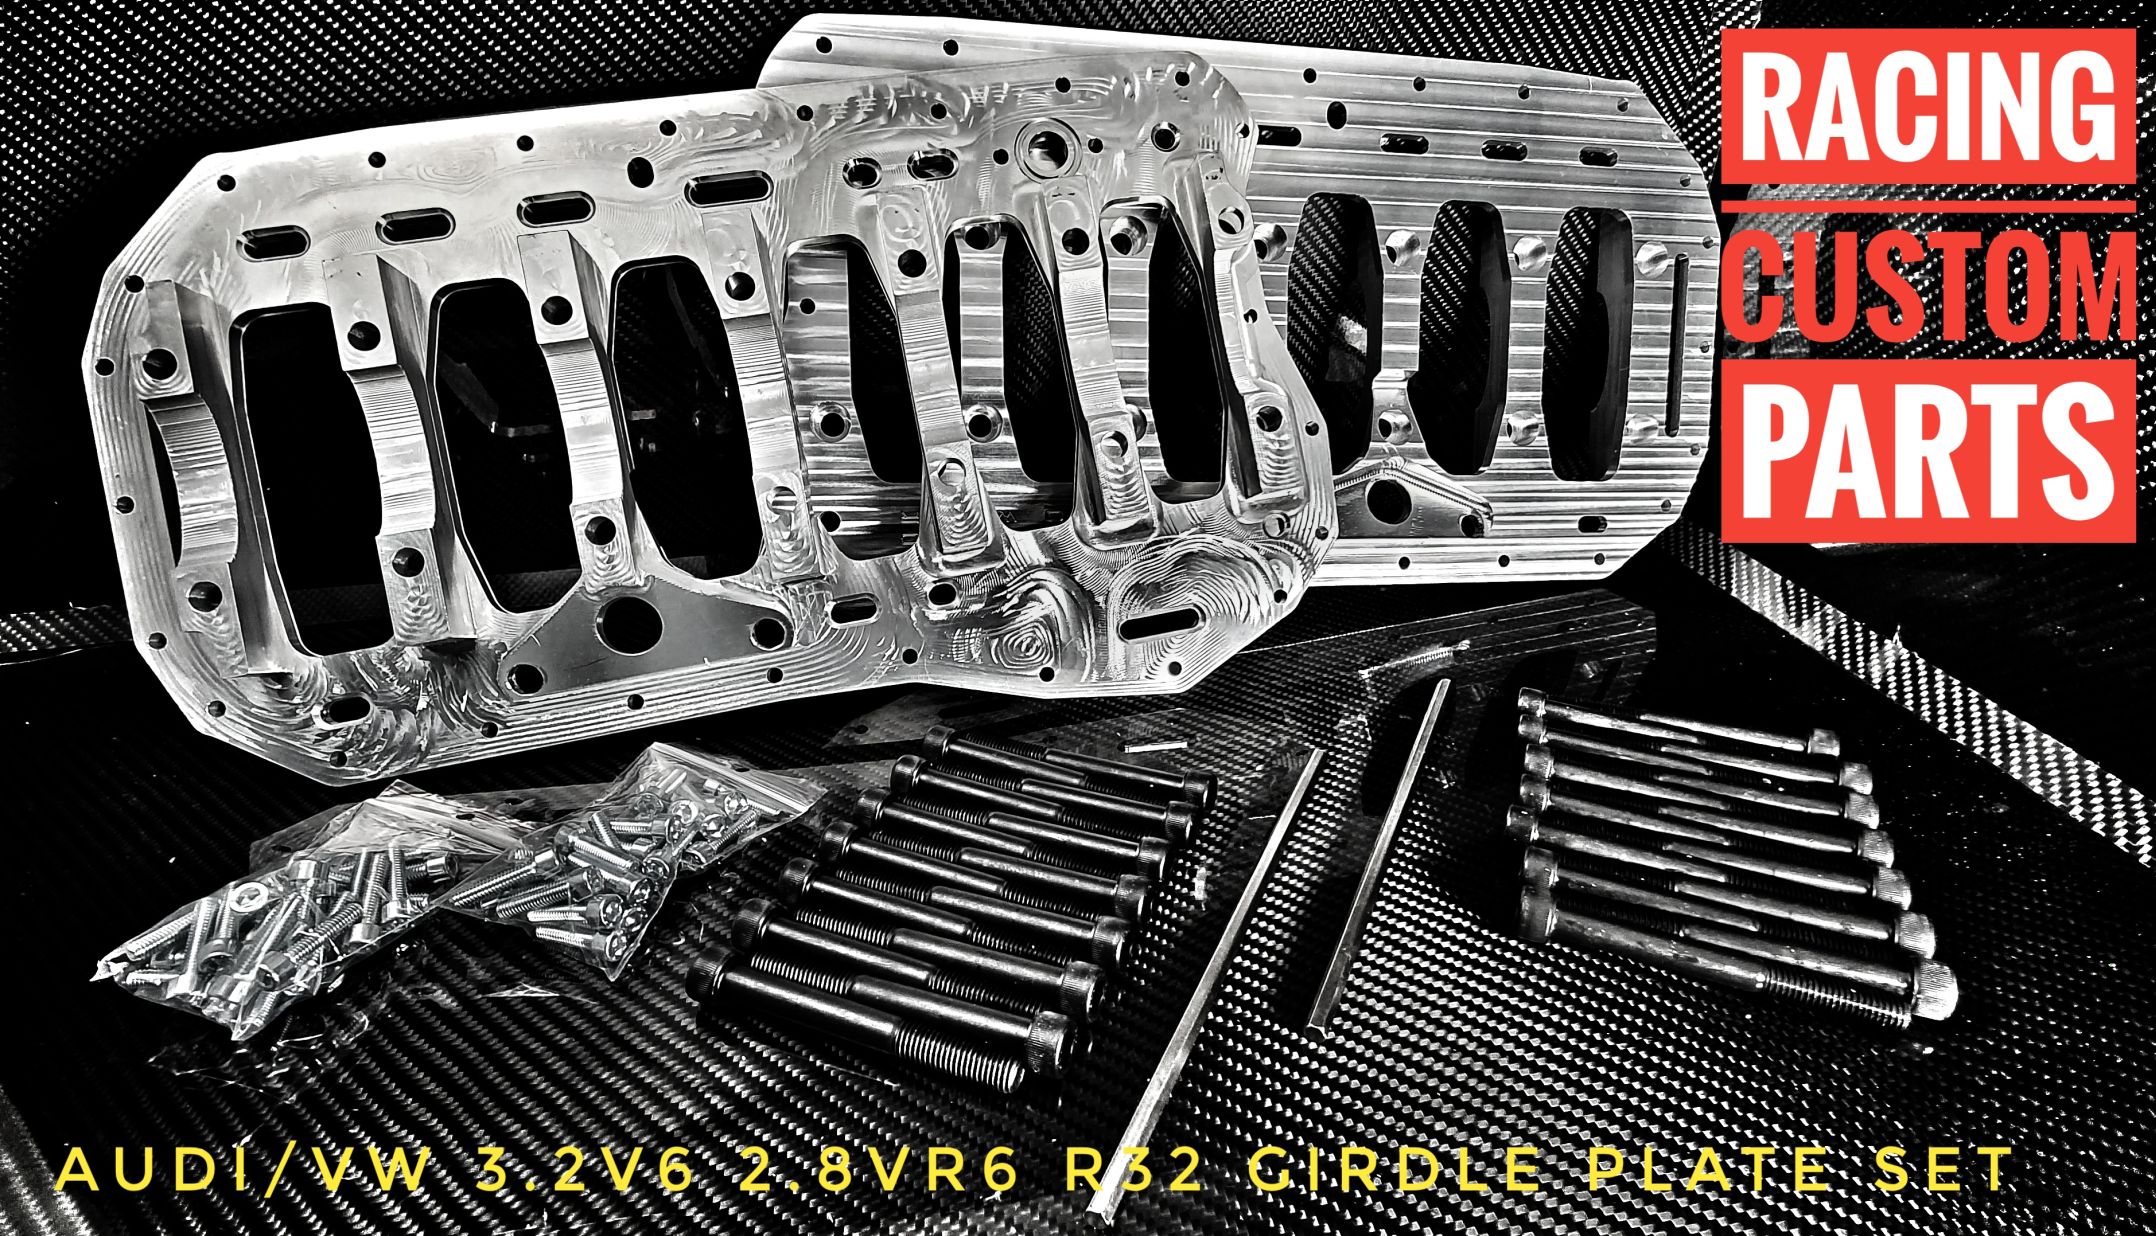 gridle plate r32 3.2 v6 audi vw vr6 billet cnc racing cuustom parts block girdle